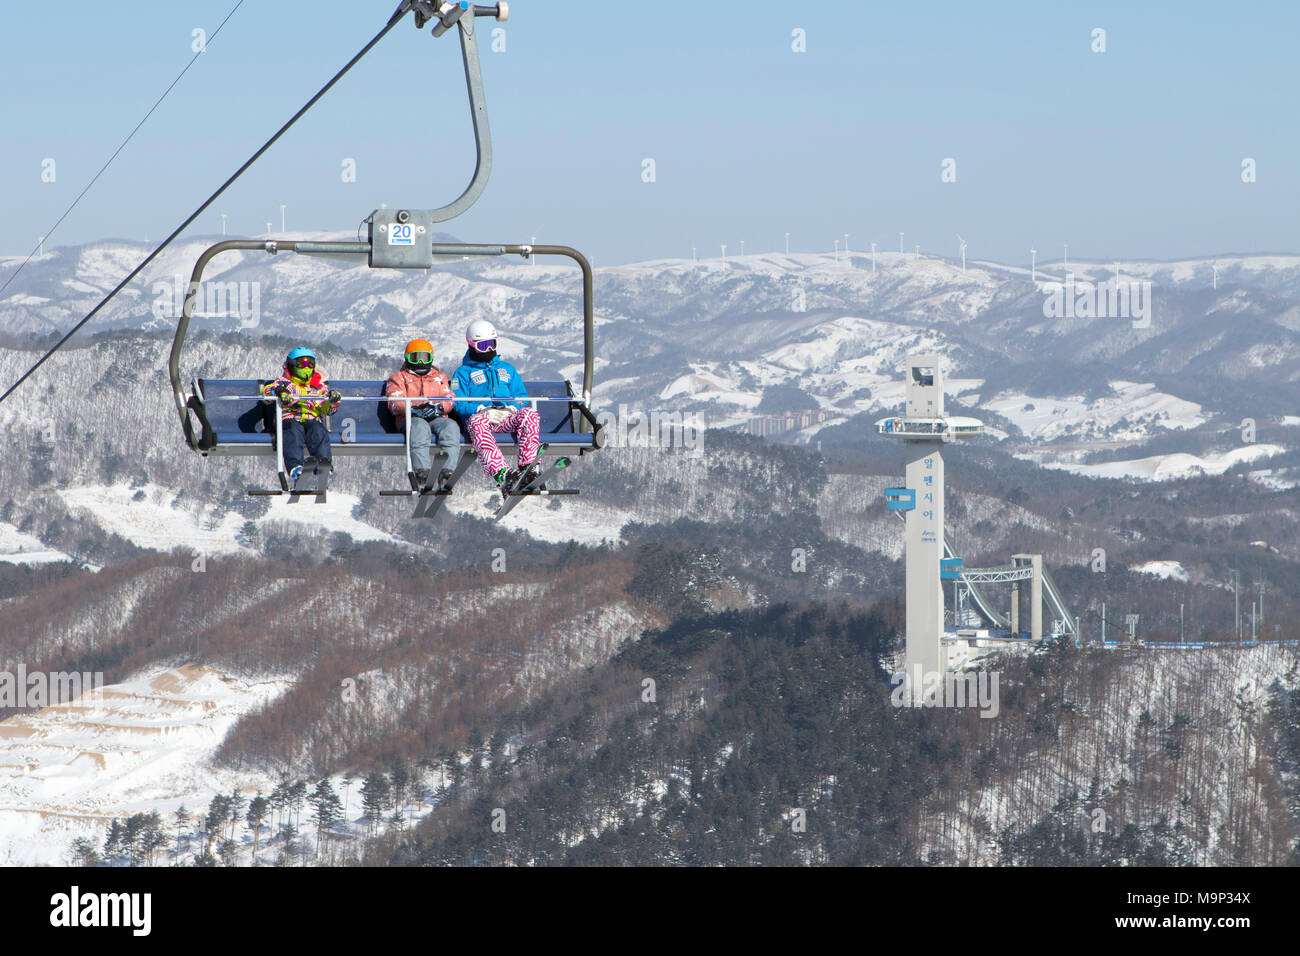 Vestiti colorati sciatori in una seggiovia alta sopra Alpensia resort nella regione del Gangwon-do di Corea del Sud. Il Alpensia Resort è una località sciistica e una attrazione turistica. Esso si trova sul territorio del comune di Daegwallyeong-myeon, nella contea di Pyeongchang, ospitando le Olimpiadi Invernali nel febbraio 2018. La stazione sciistica è di circa 2 ore e mezzo da Seoul o dall'Aeroporto di Incheon in auto, prevalentemente tutti autostrada. Alpensia dispone di 6 piste per lo sci e lo snowboard, con corse fino a 1,4 km (0,87 mi) lungo, per principianti e progrediti, e una zona riservata per gli snowboarder. Foto Stock